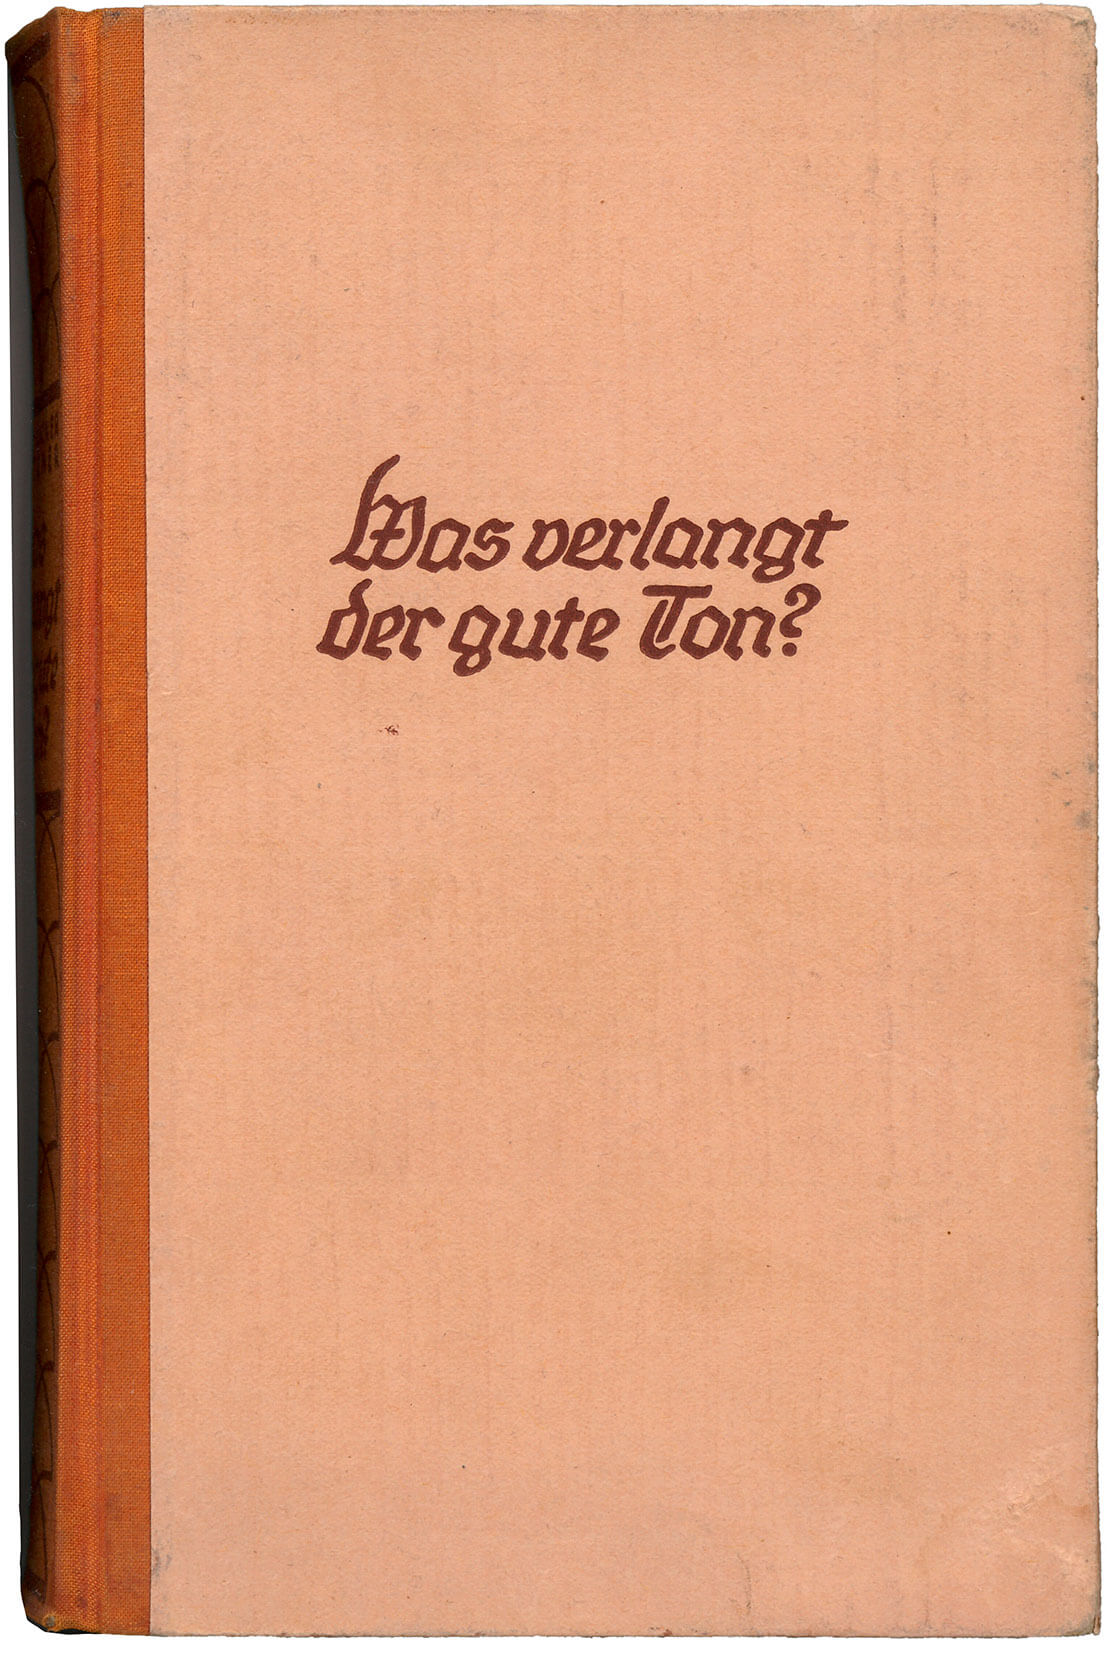 Margarete Krockner-Weitzner: Was verlangt der gute Ton? Ein Berater in allen Lebenslagen, 6. Aufl. Wien/Leipzig 1937, Susanne Breuss 